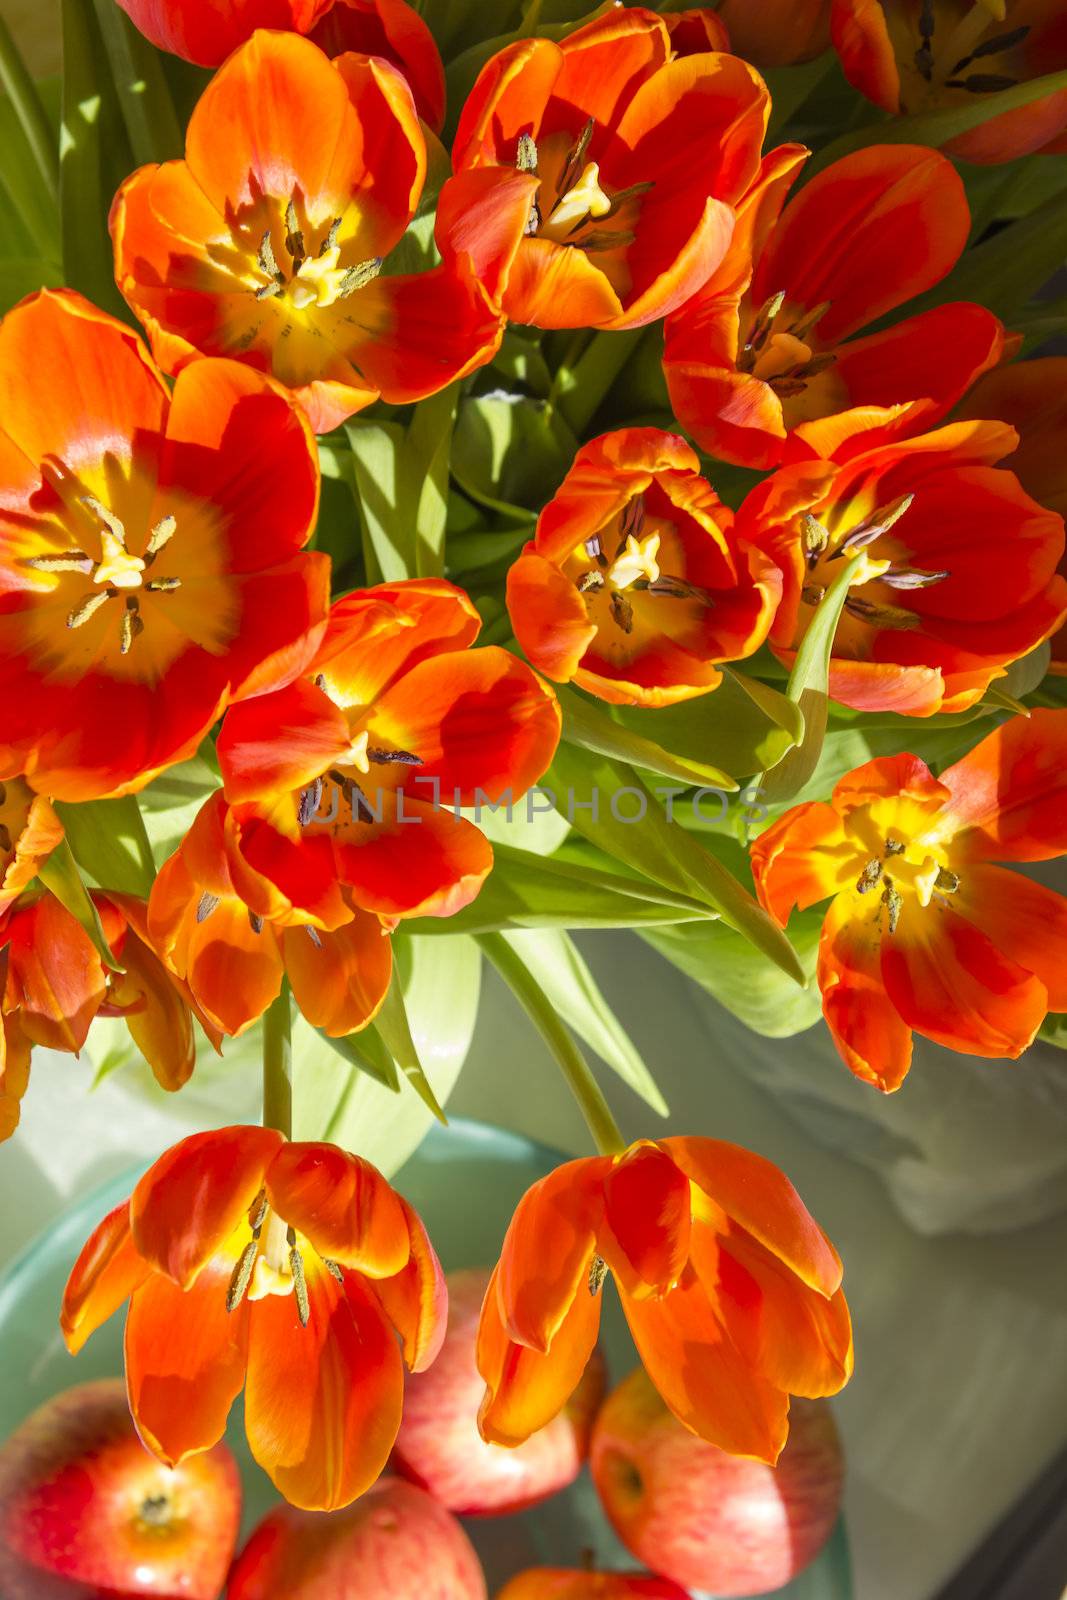 tulips in sunlight by Tetyana